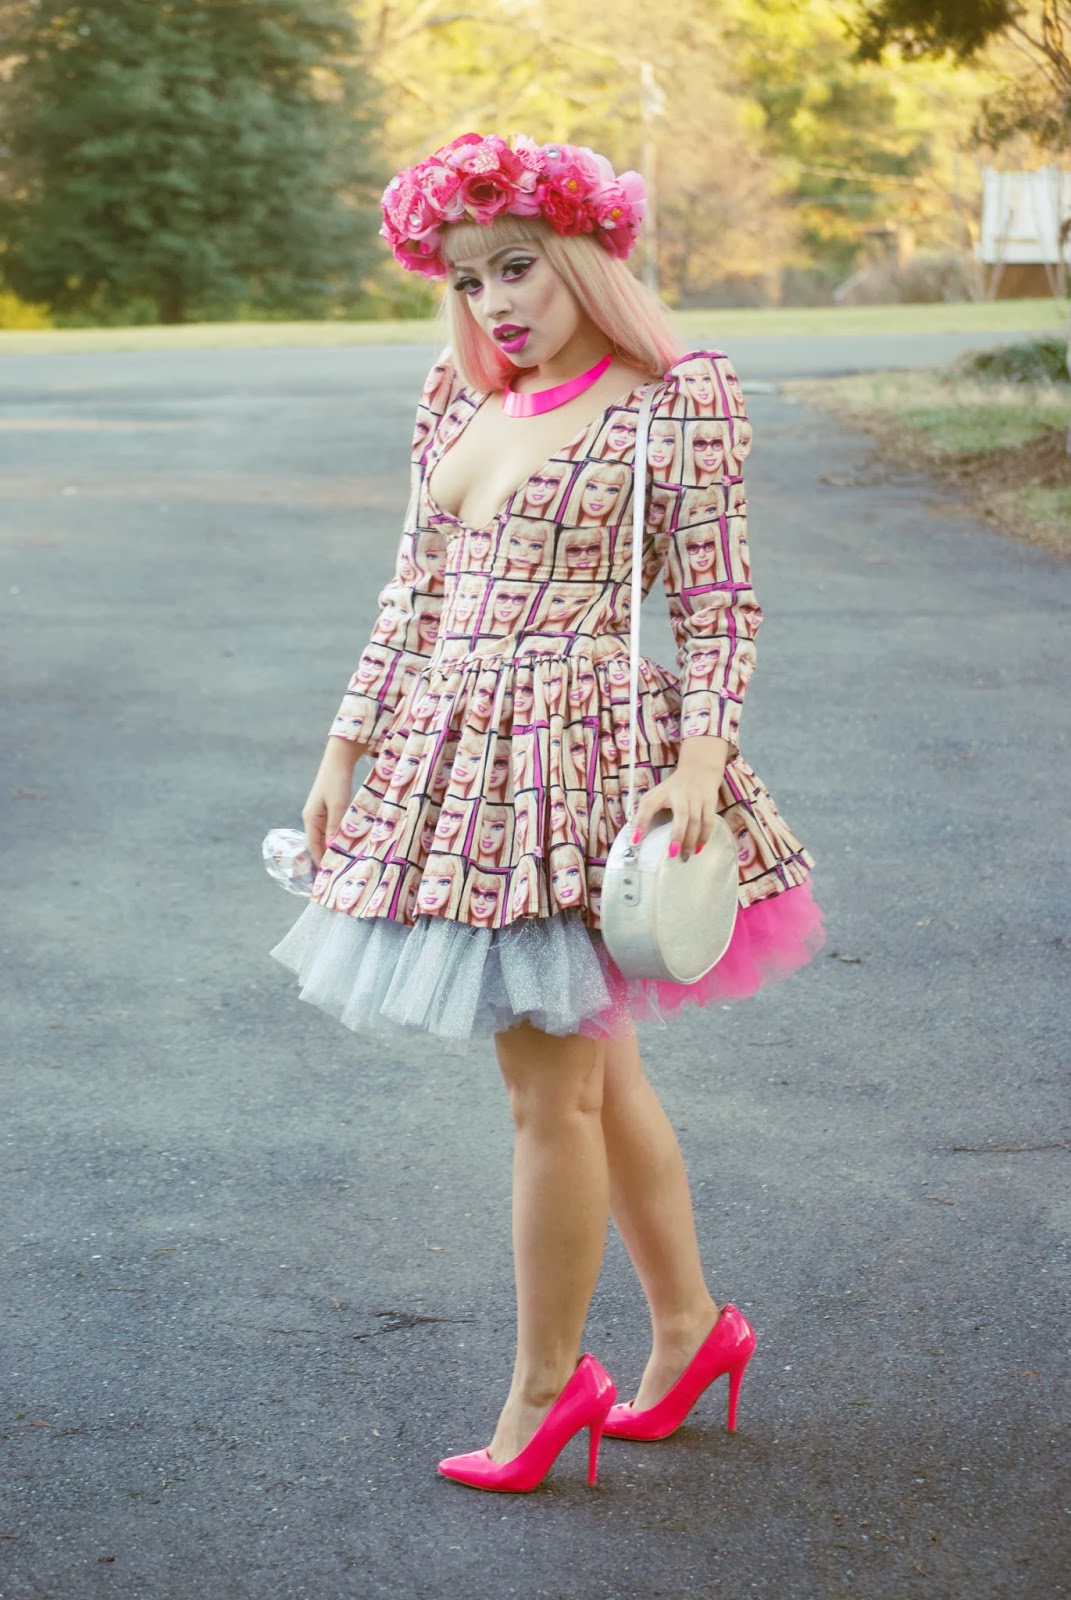 ALEXANDRAMETALCLOWN: Glitter Barbie Outfit